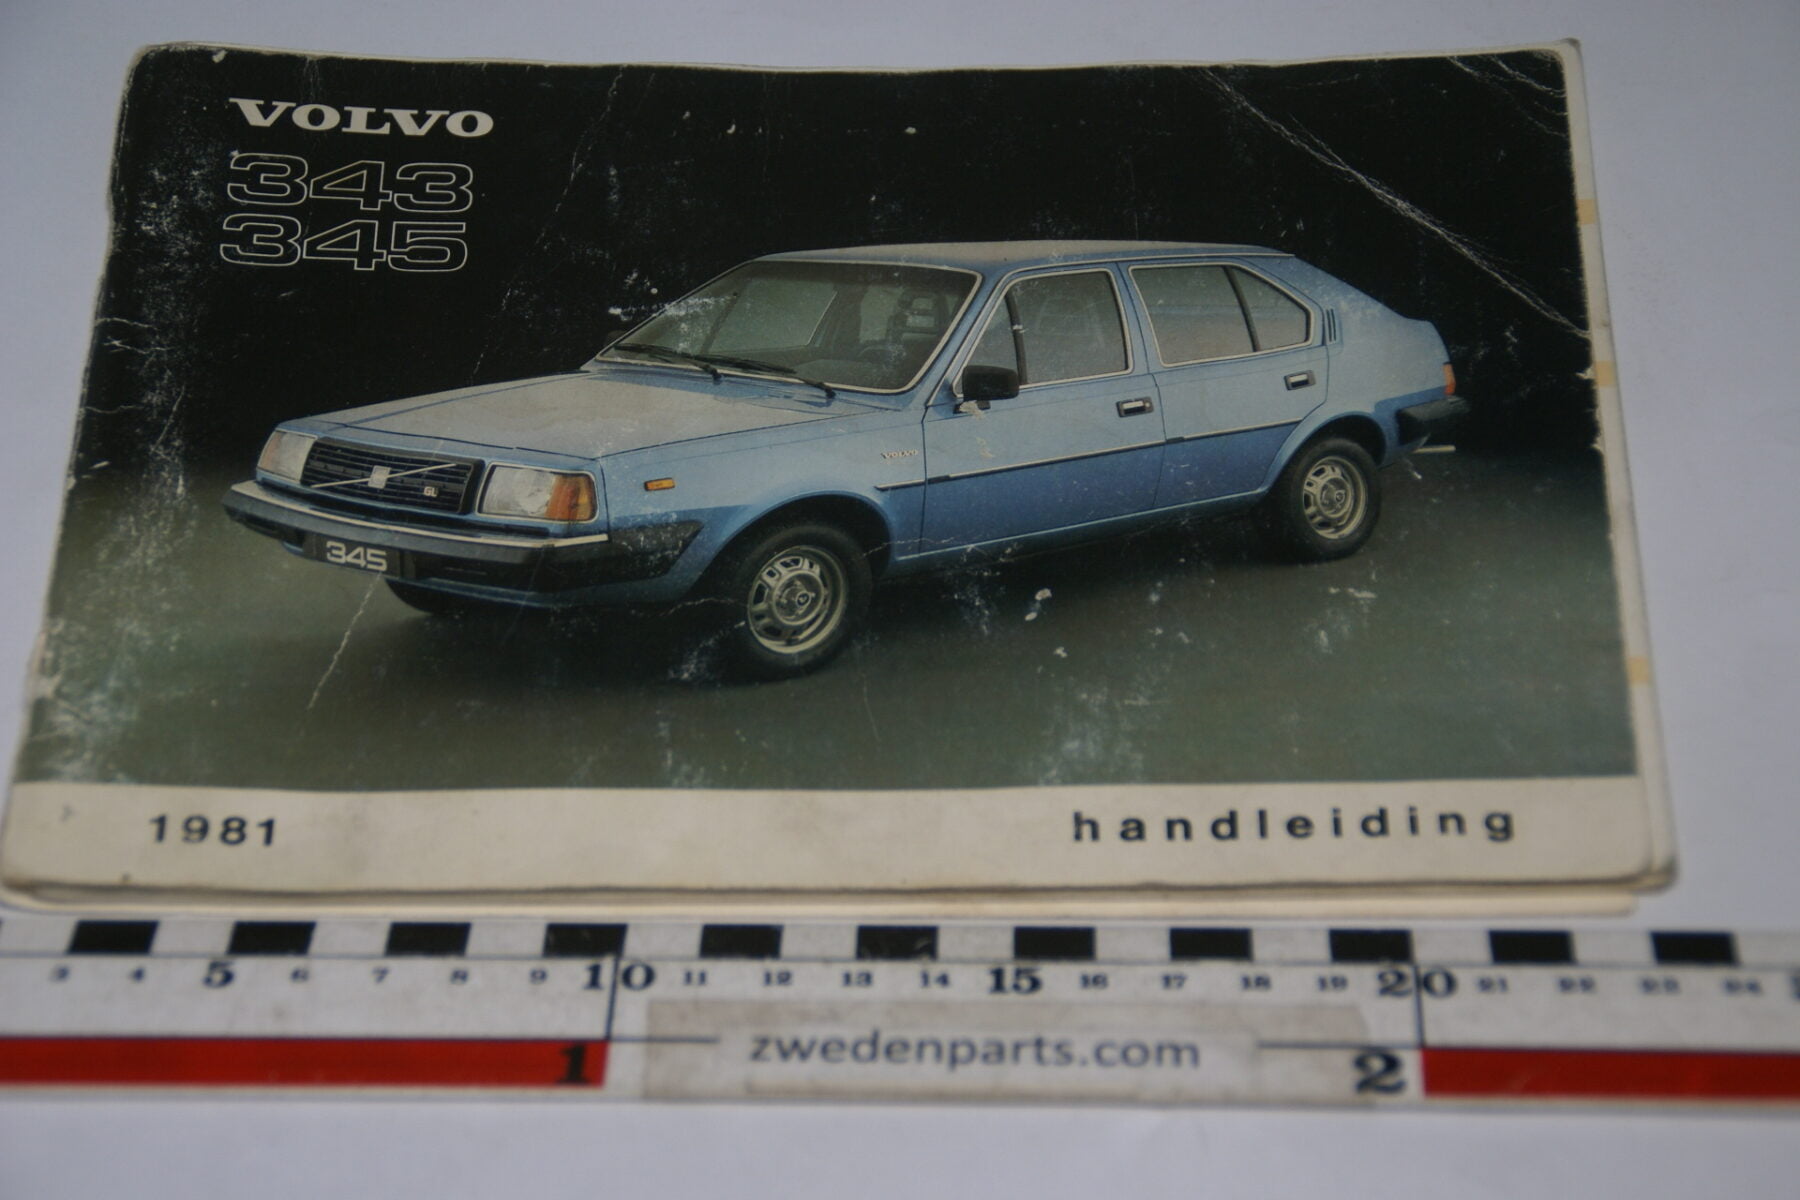 DSC07103 1980 origineel Volvo 343 345 handleiding TP 2093-1